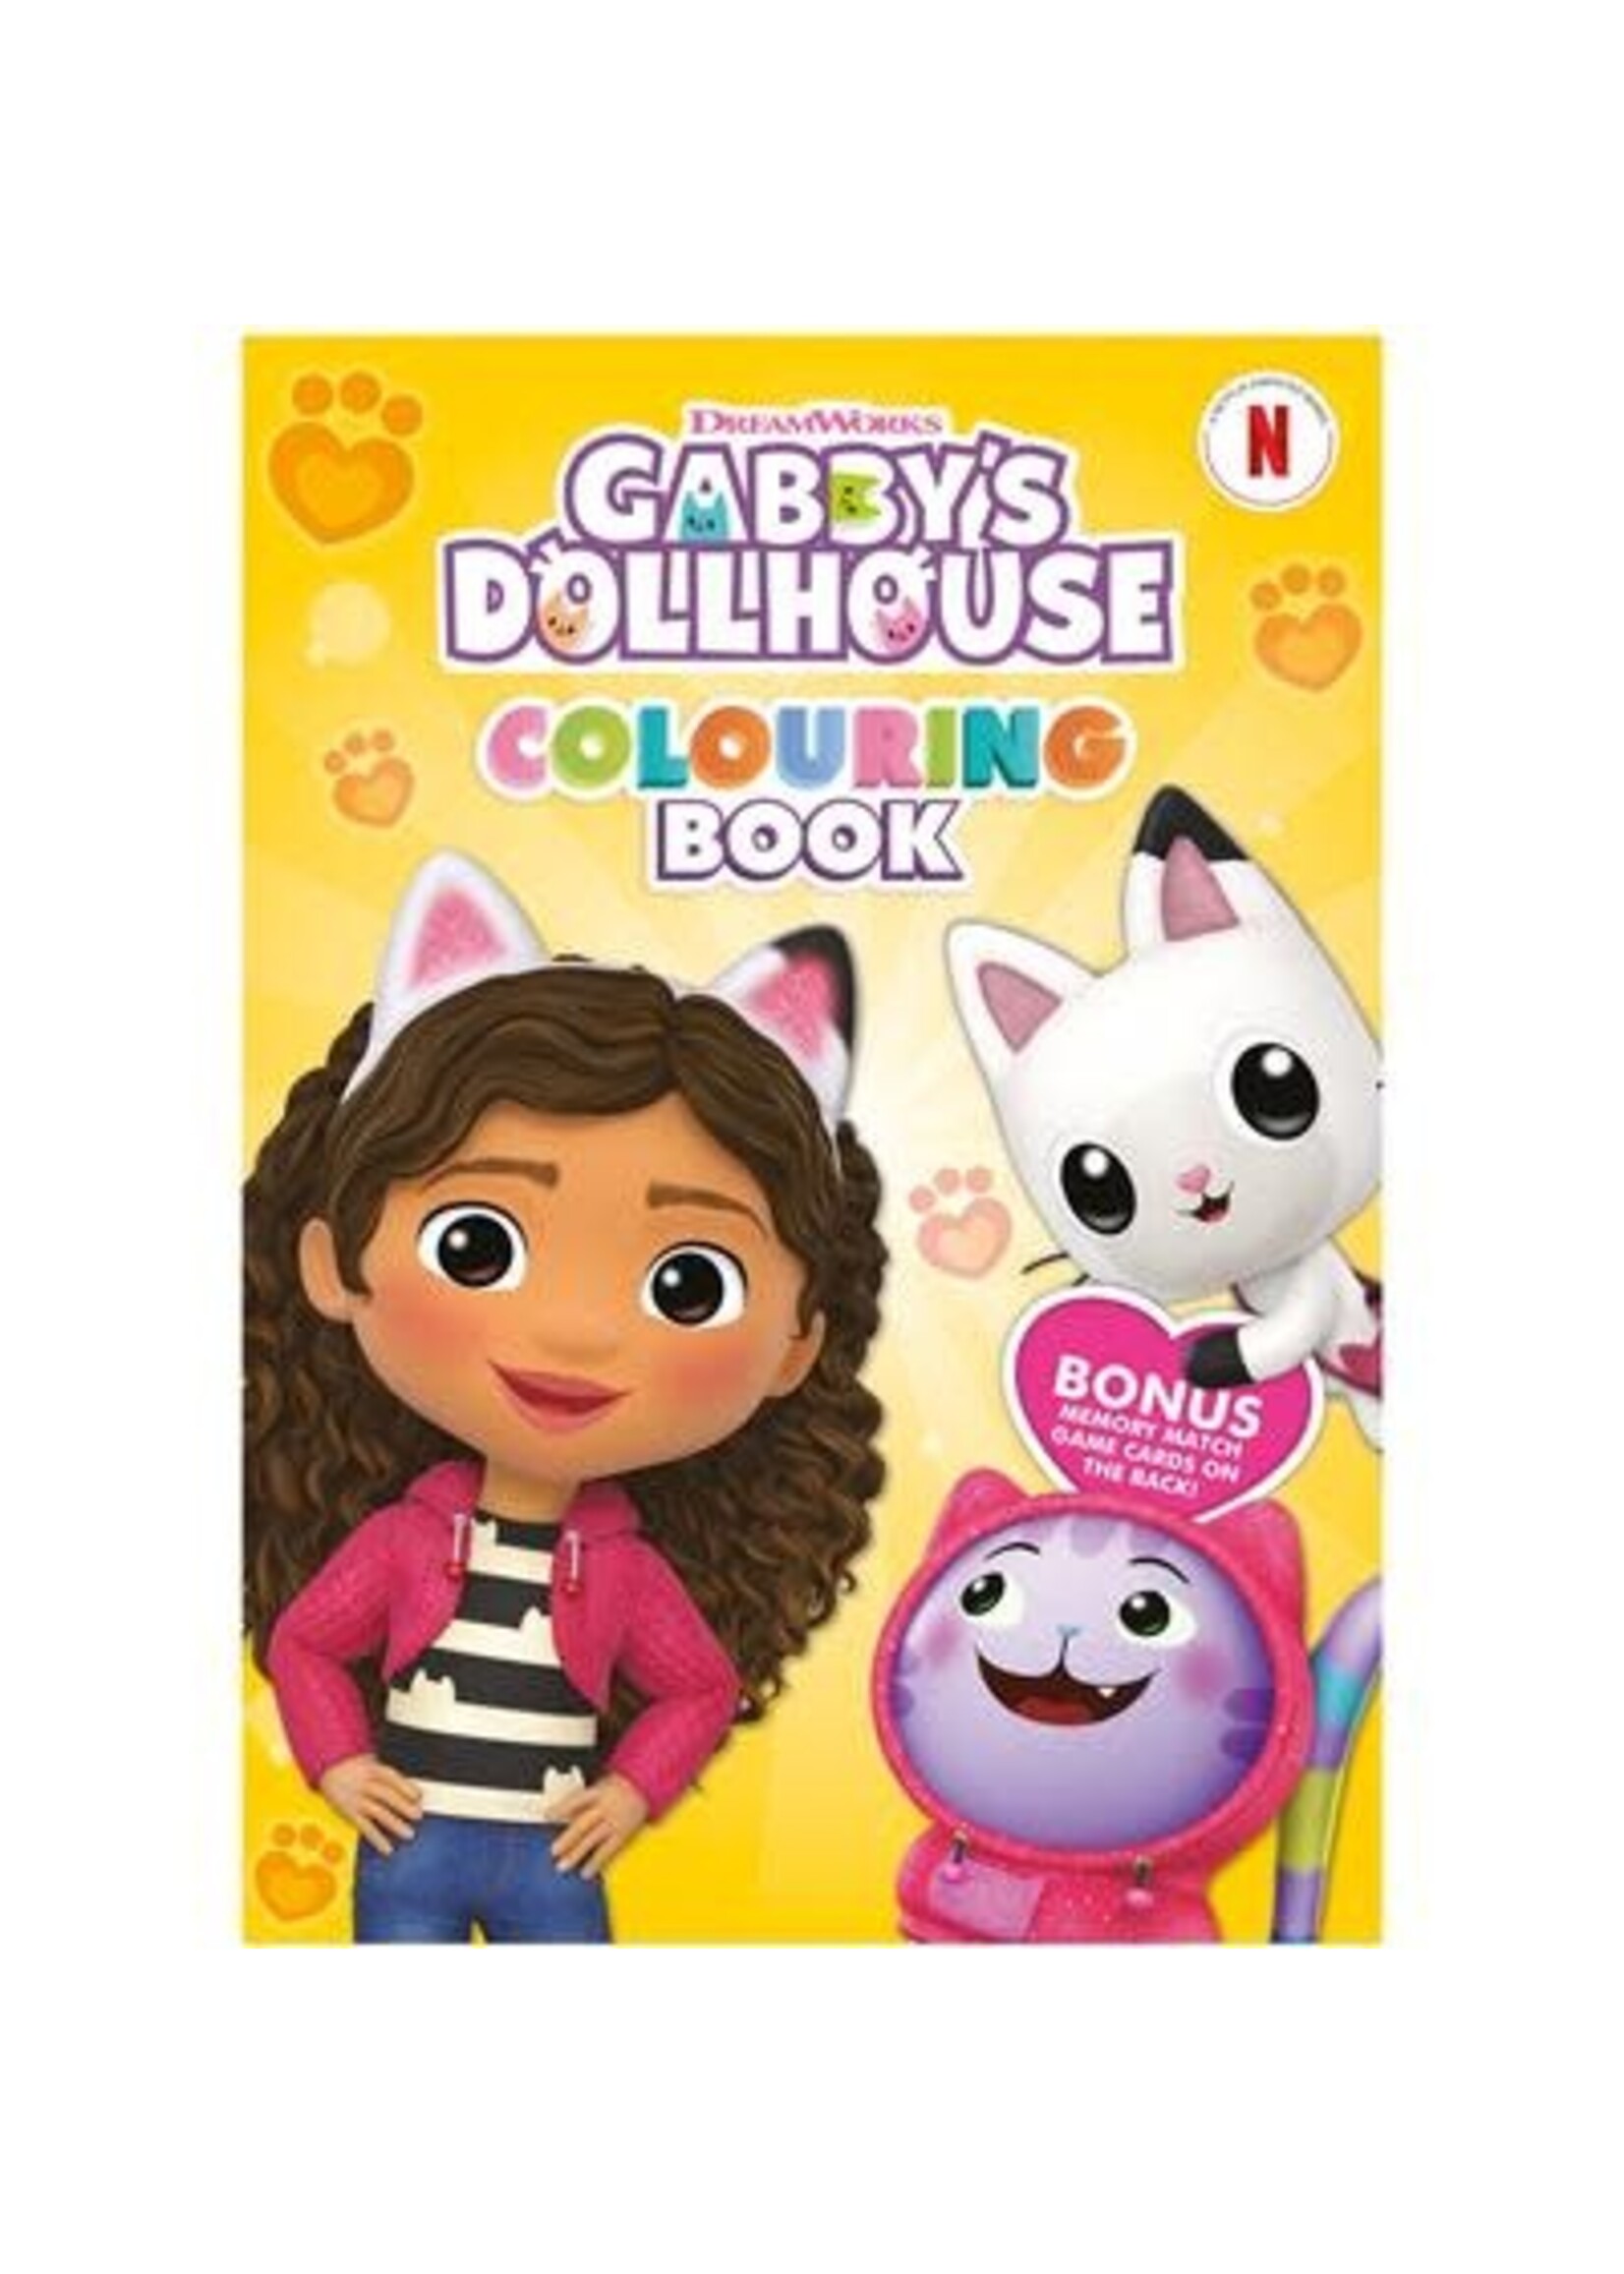 Gabbys Dollhouse GABBY'S DOLLHOUSE COLOURING BOOK